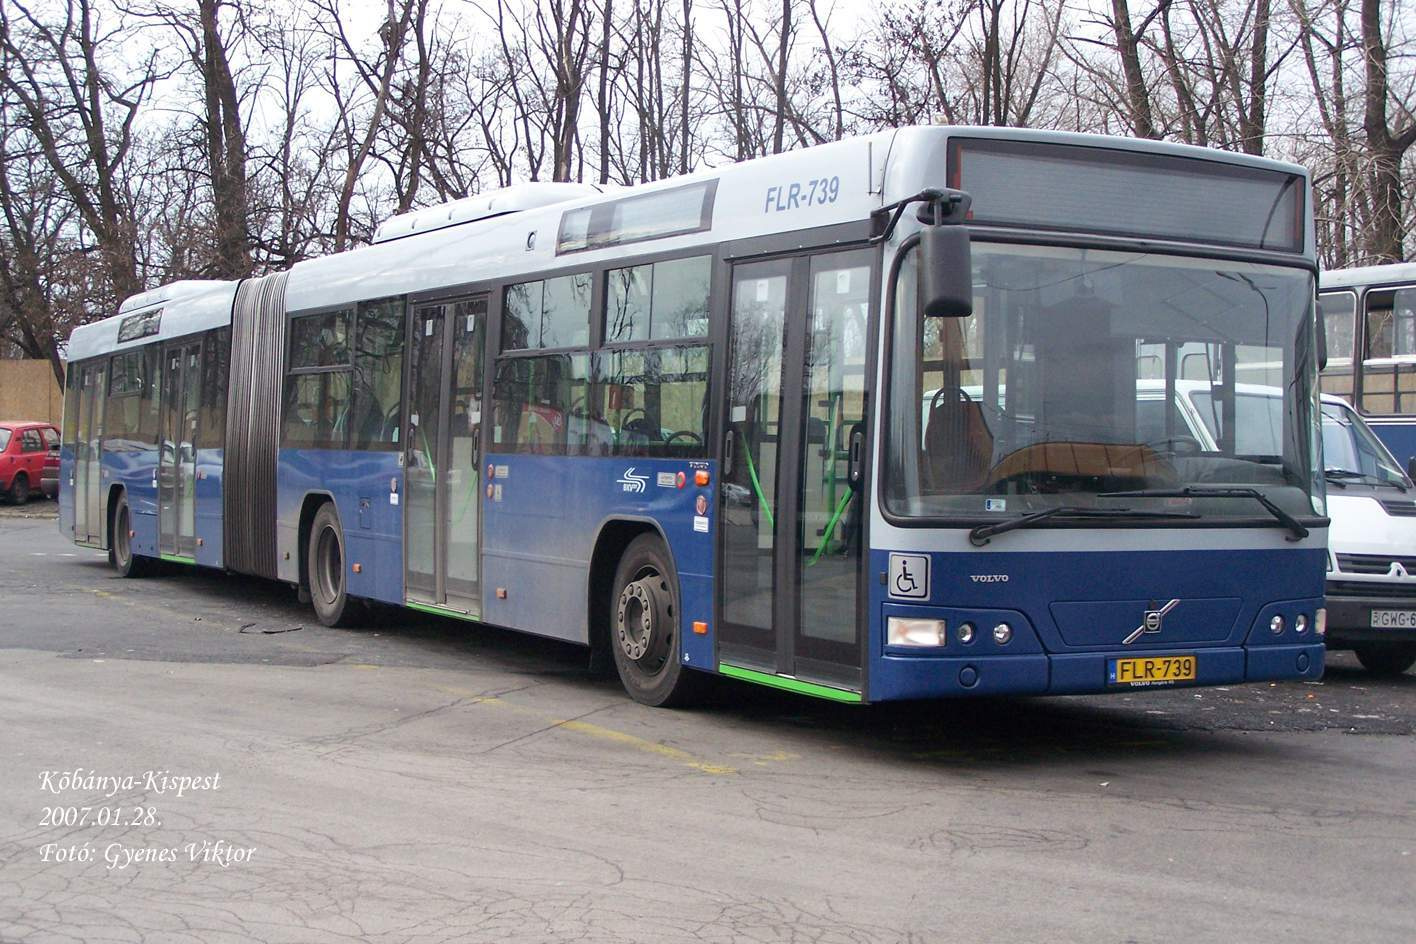 Busz FLR-739